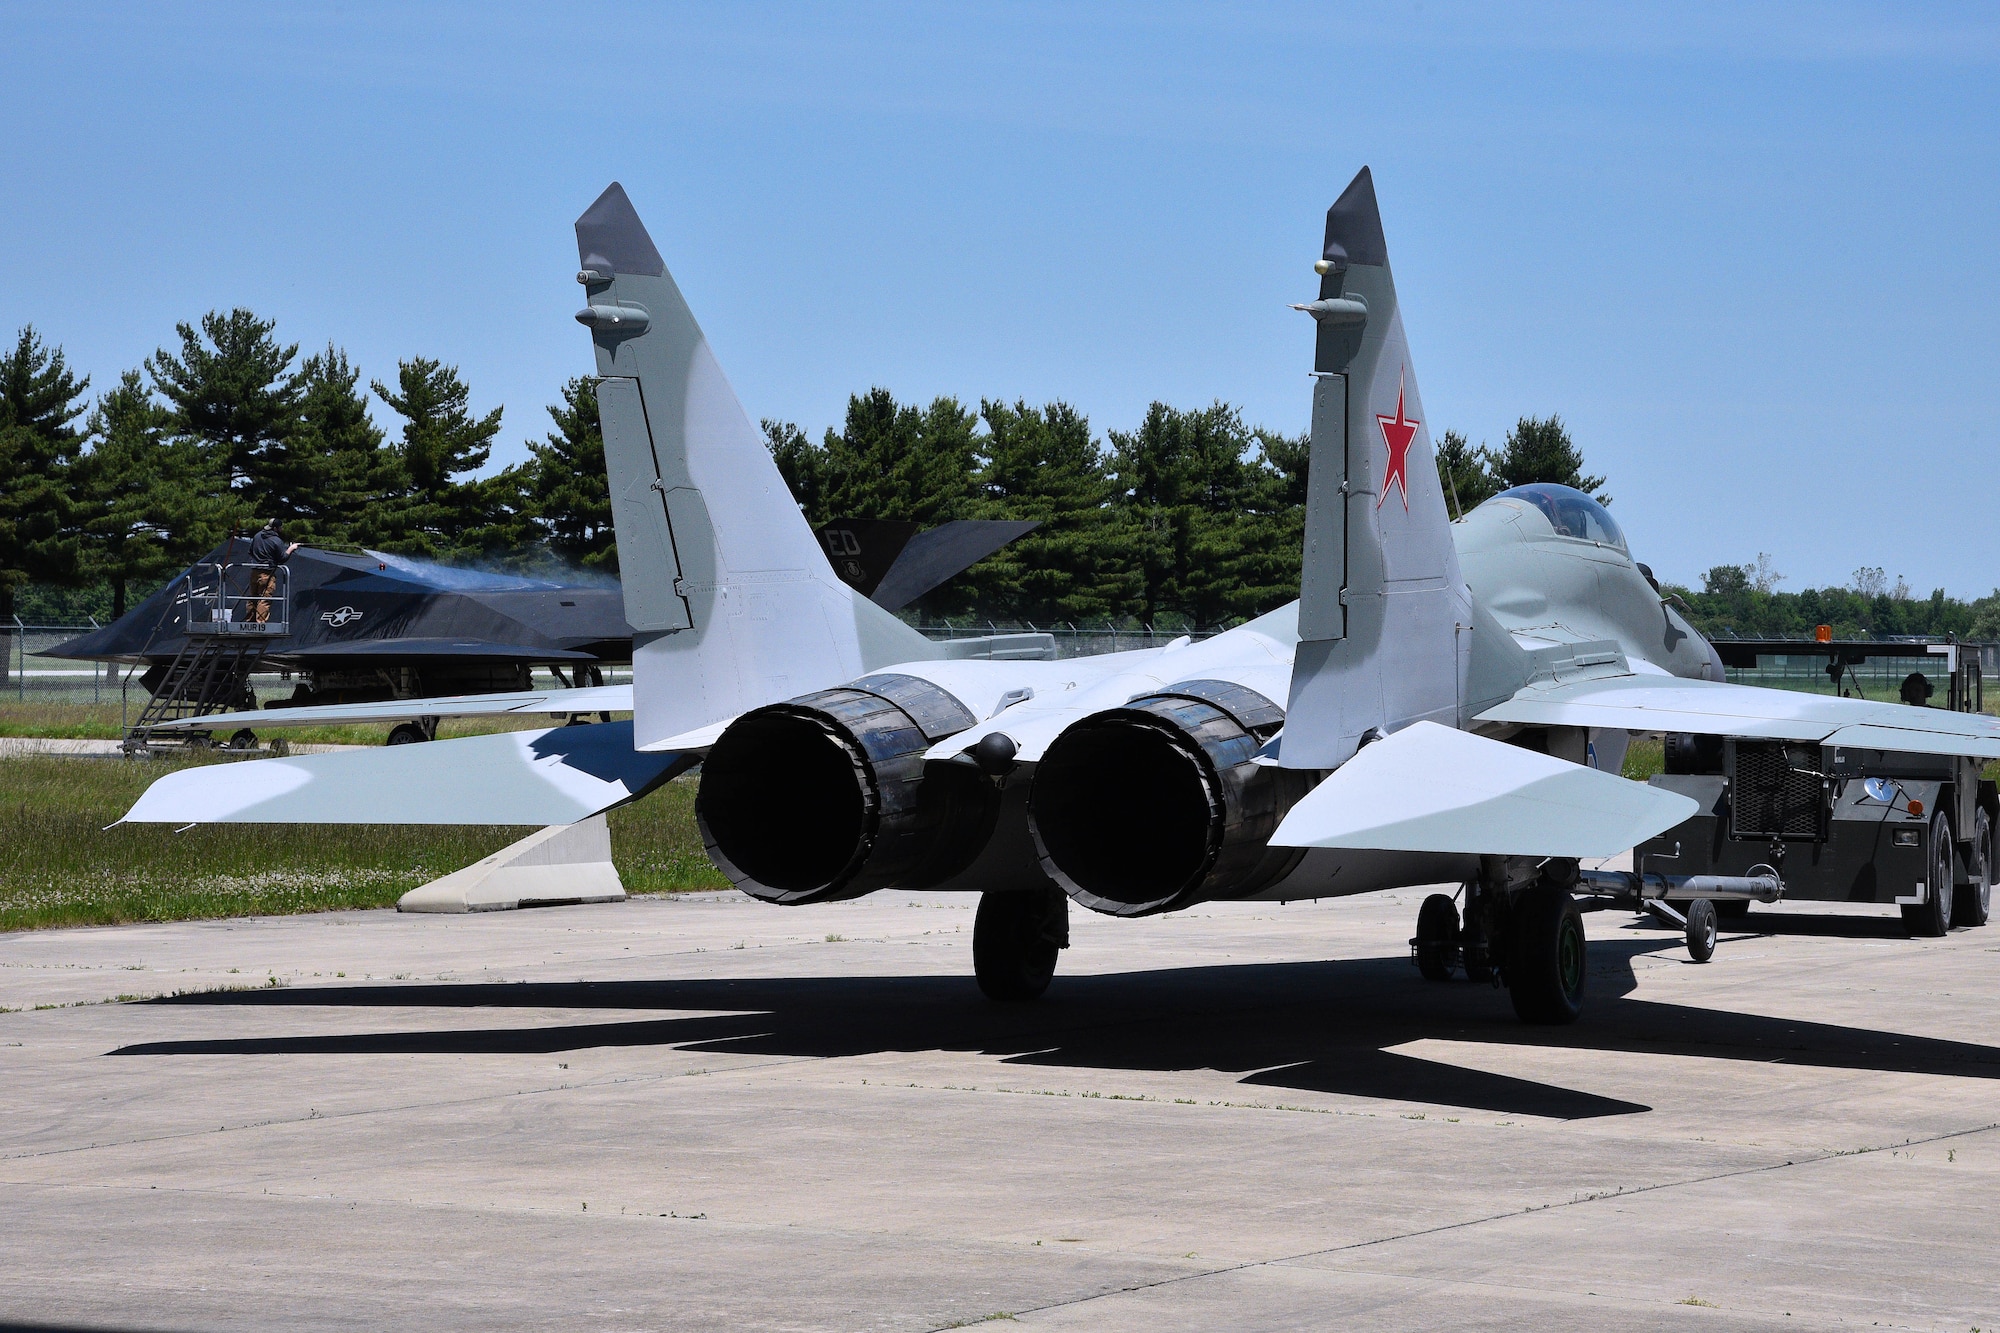 Mikoyan-Gurevich MiG-29A aircraft